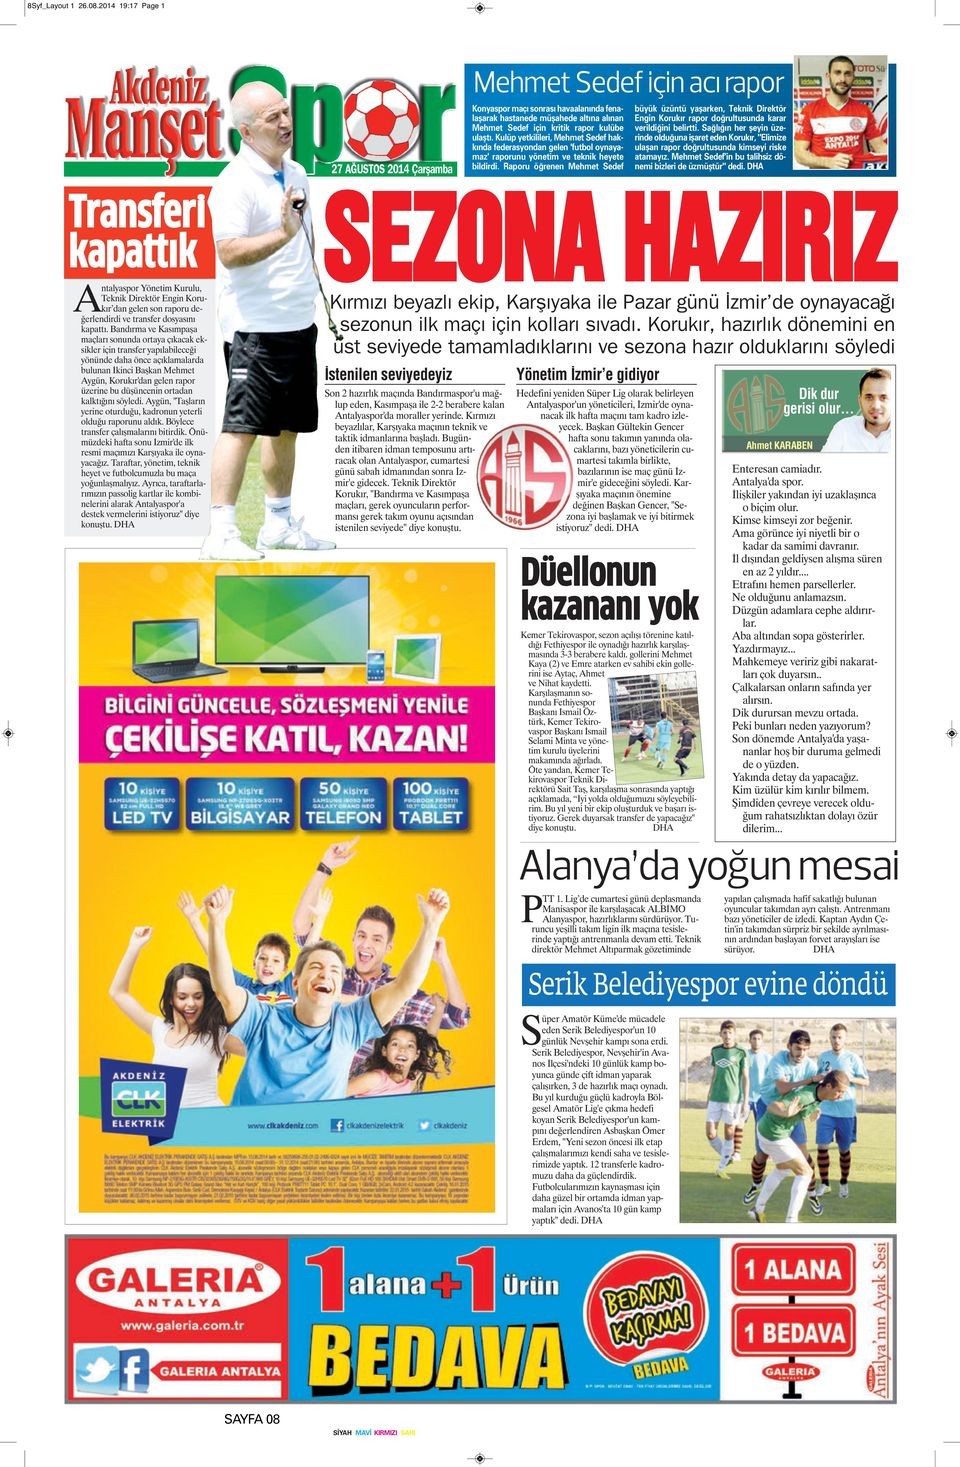 Kulüp yetkilileri, Mehmet Sedef hakkında federasyondan gelen 'futbol oynayamaz' raporunu yönetim ve teknik heyete bildirdi.